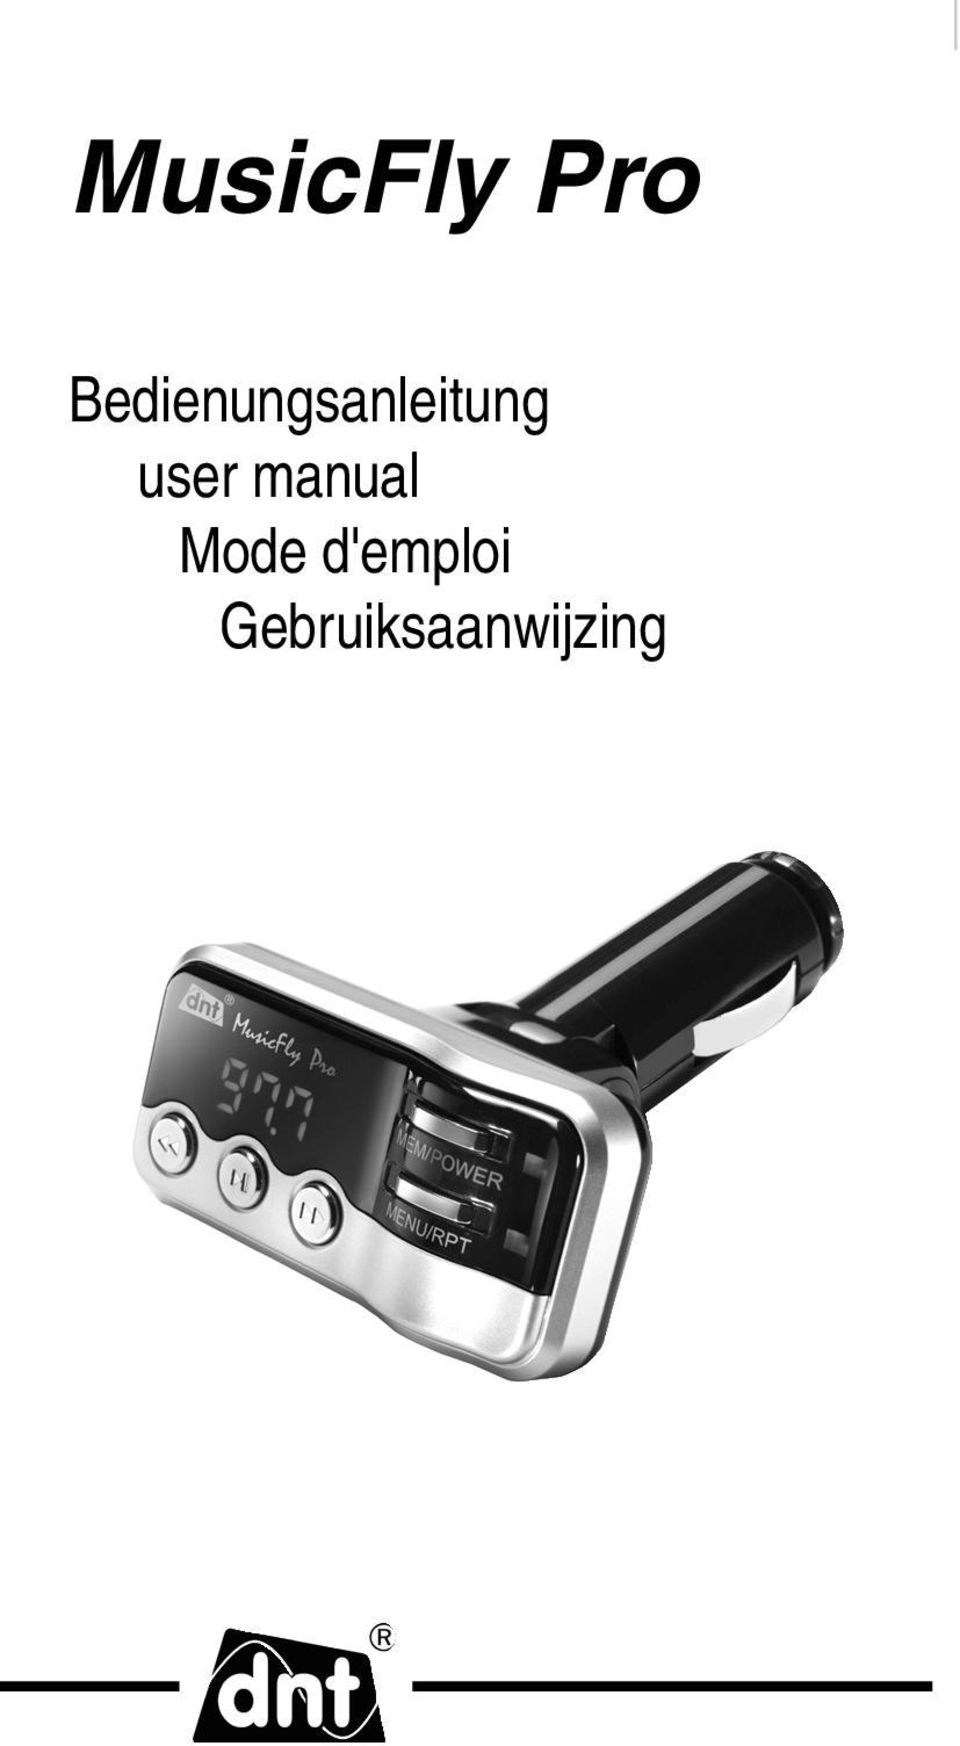 user manual Mode